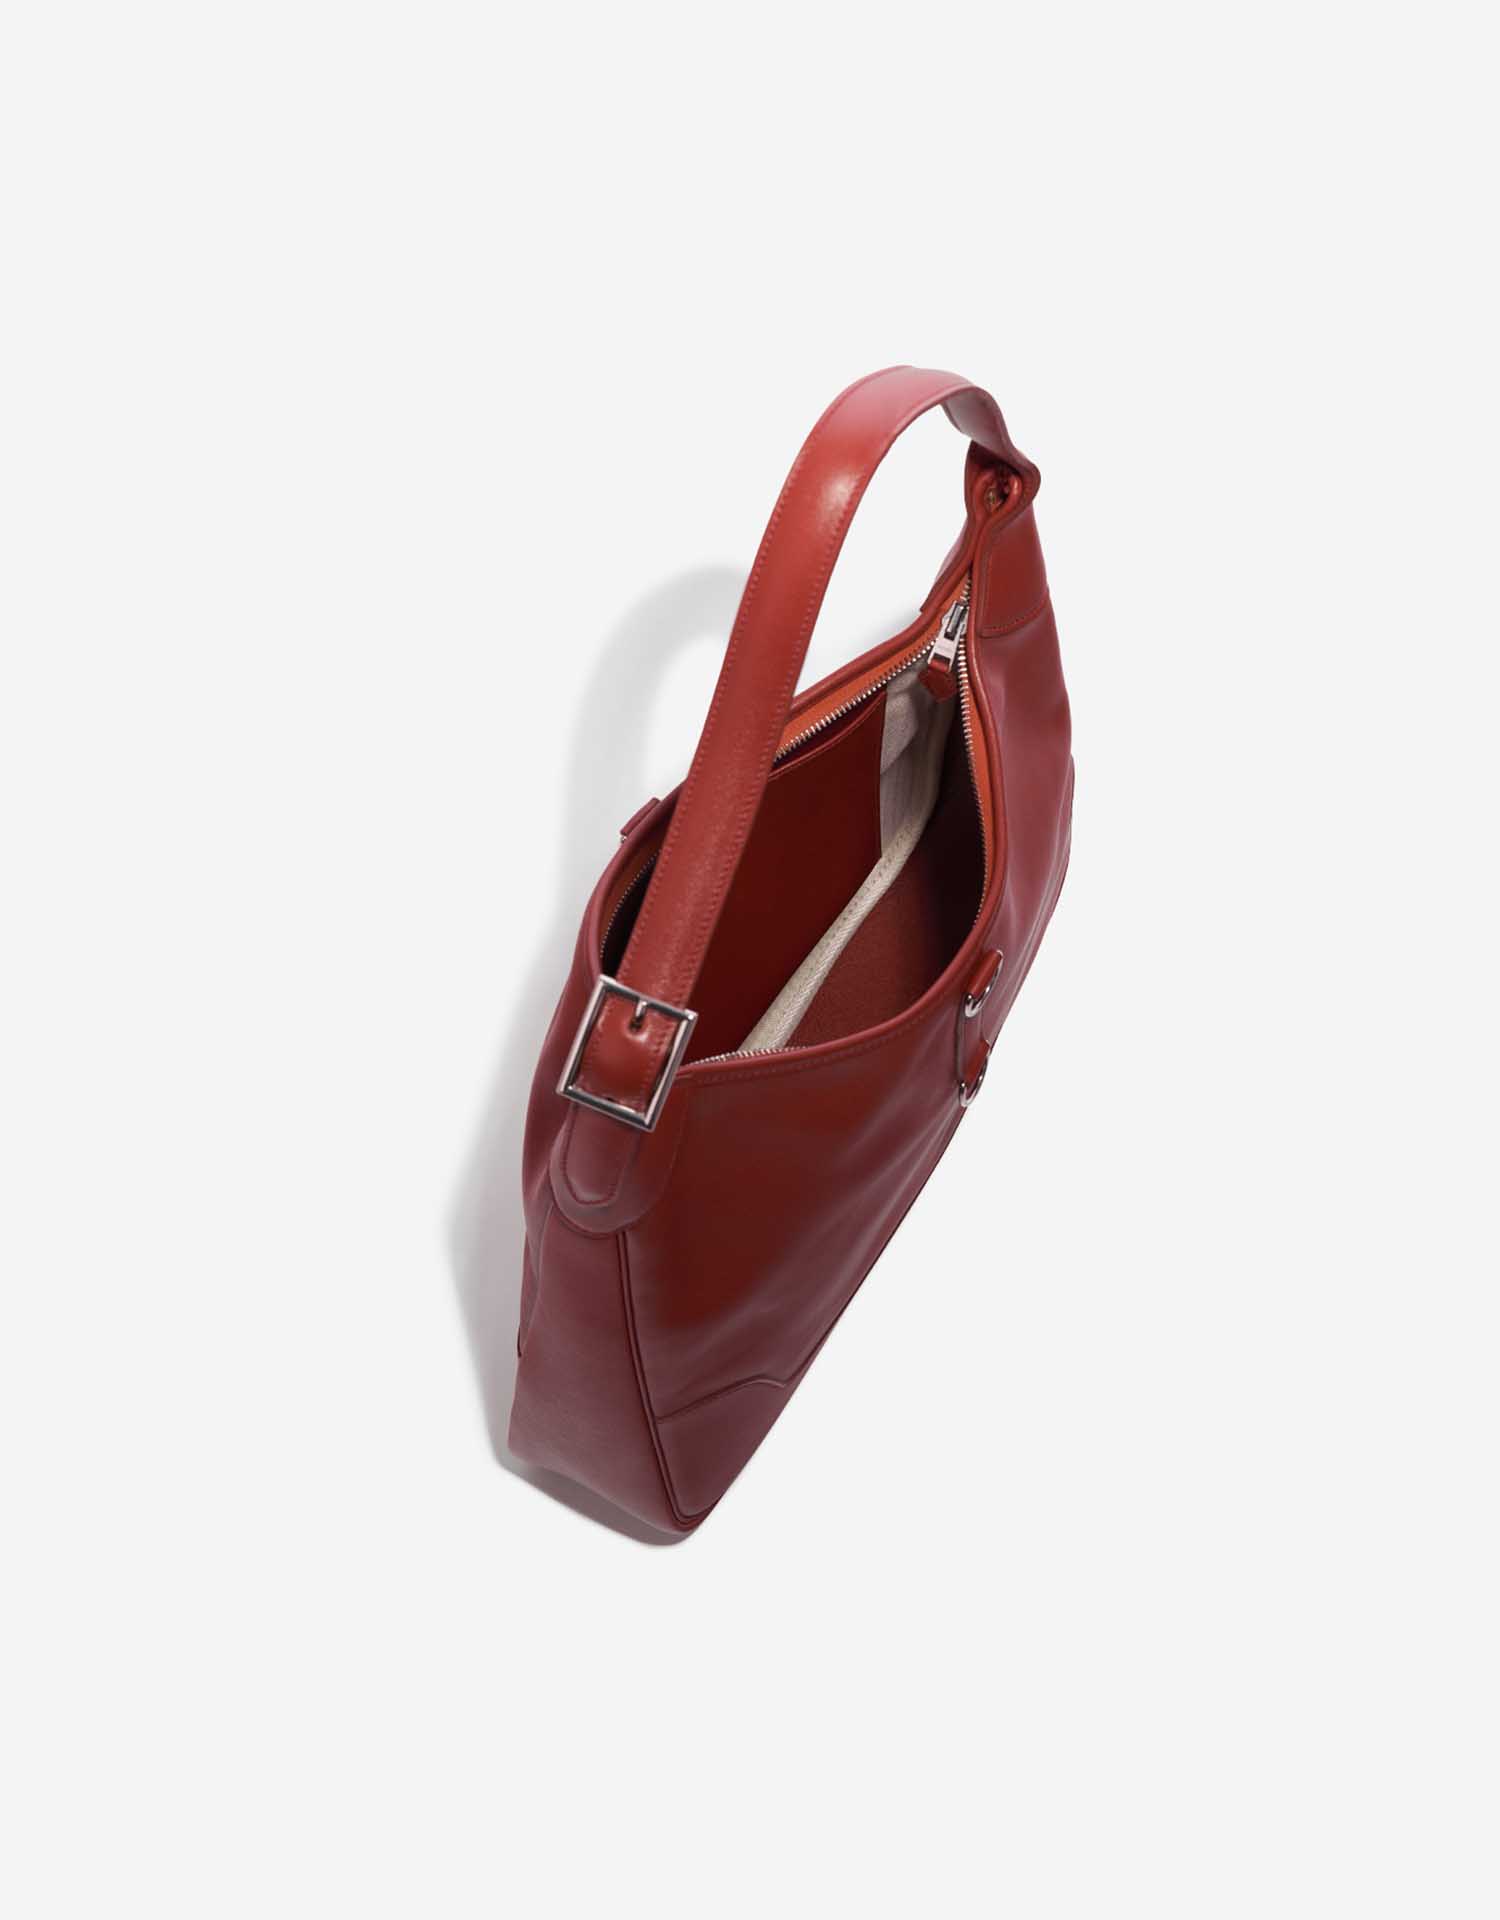 Pre-owned Hermès bag Trim 35 Evercolor Rouge Venitien Red Inside | Sell your designer bag on Saclab.com